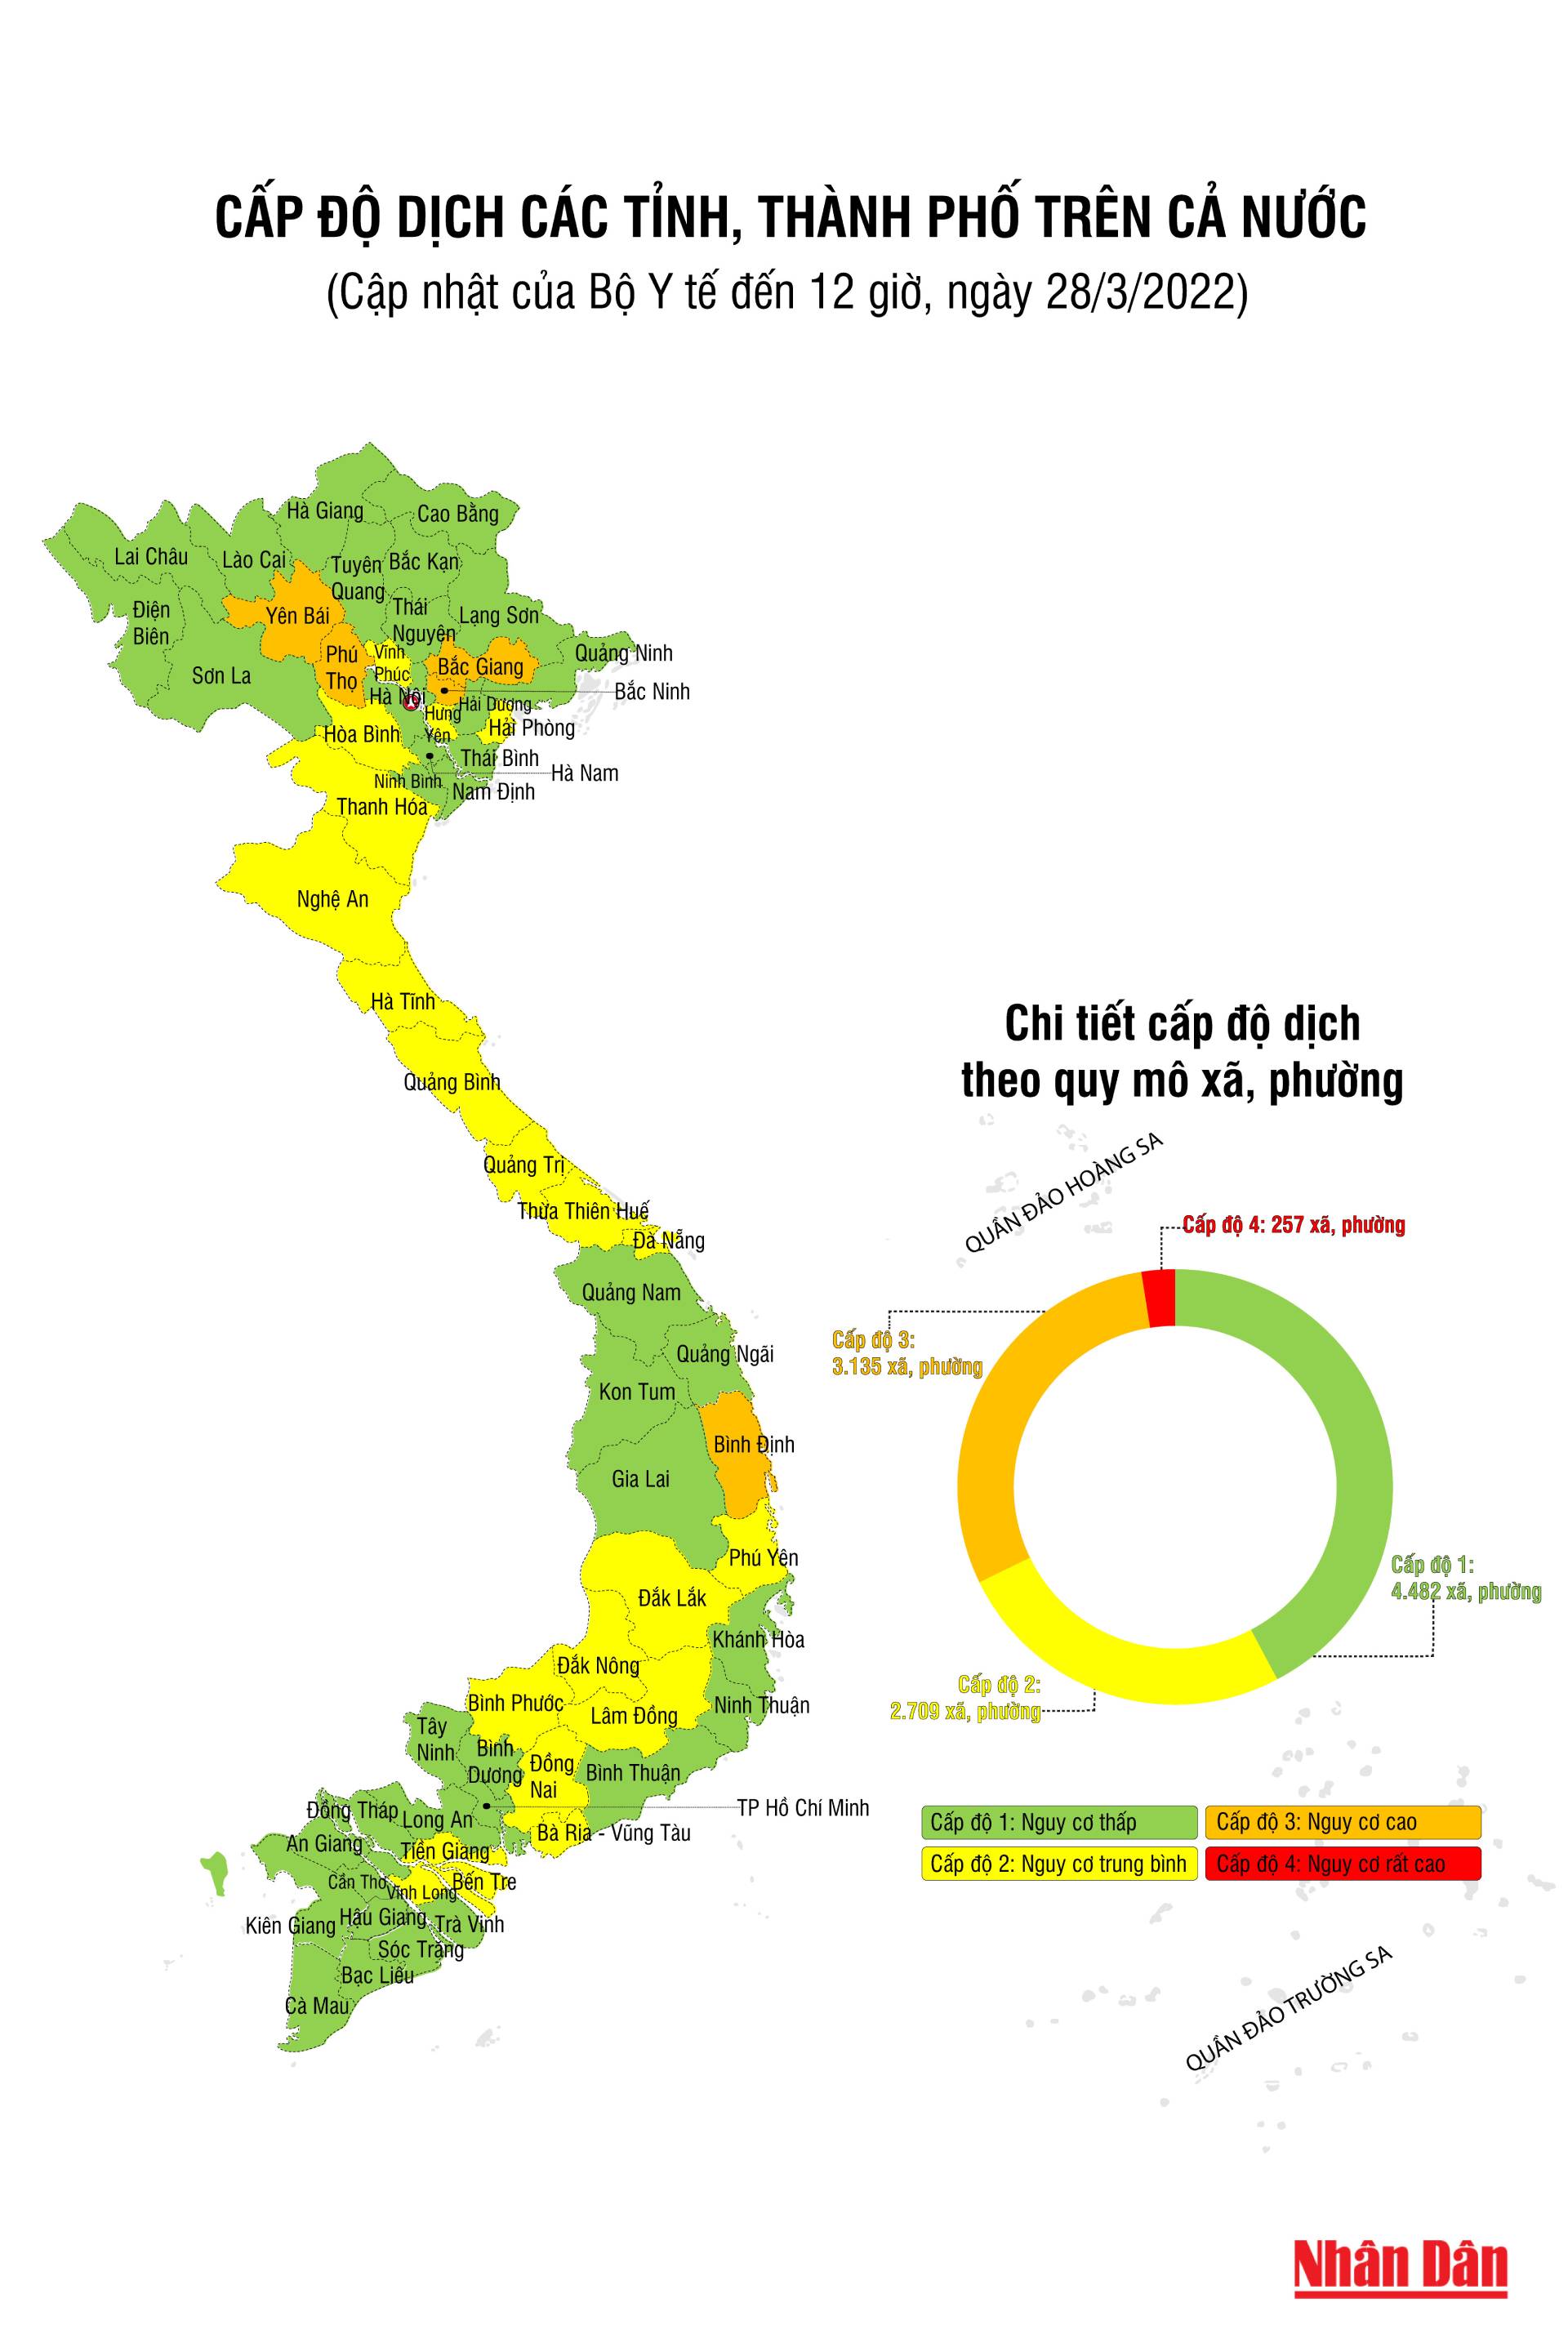 Bản đồ số thông tin dịch tễ COVID-19 Việt Nam sẽ cho phép mọi người đánh giá chính xác tình hình dịch bệnh hiện tại ở Việt Nam. Bản đồ này sẽ được cập nhật liên tục với thông tin mới nhất, cung cấp thông tin đầy đủ và chính xác đến người dân.